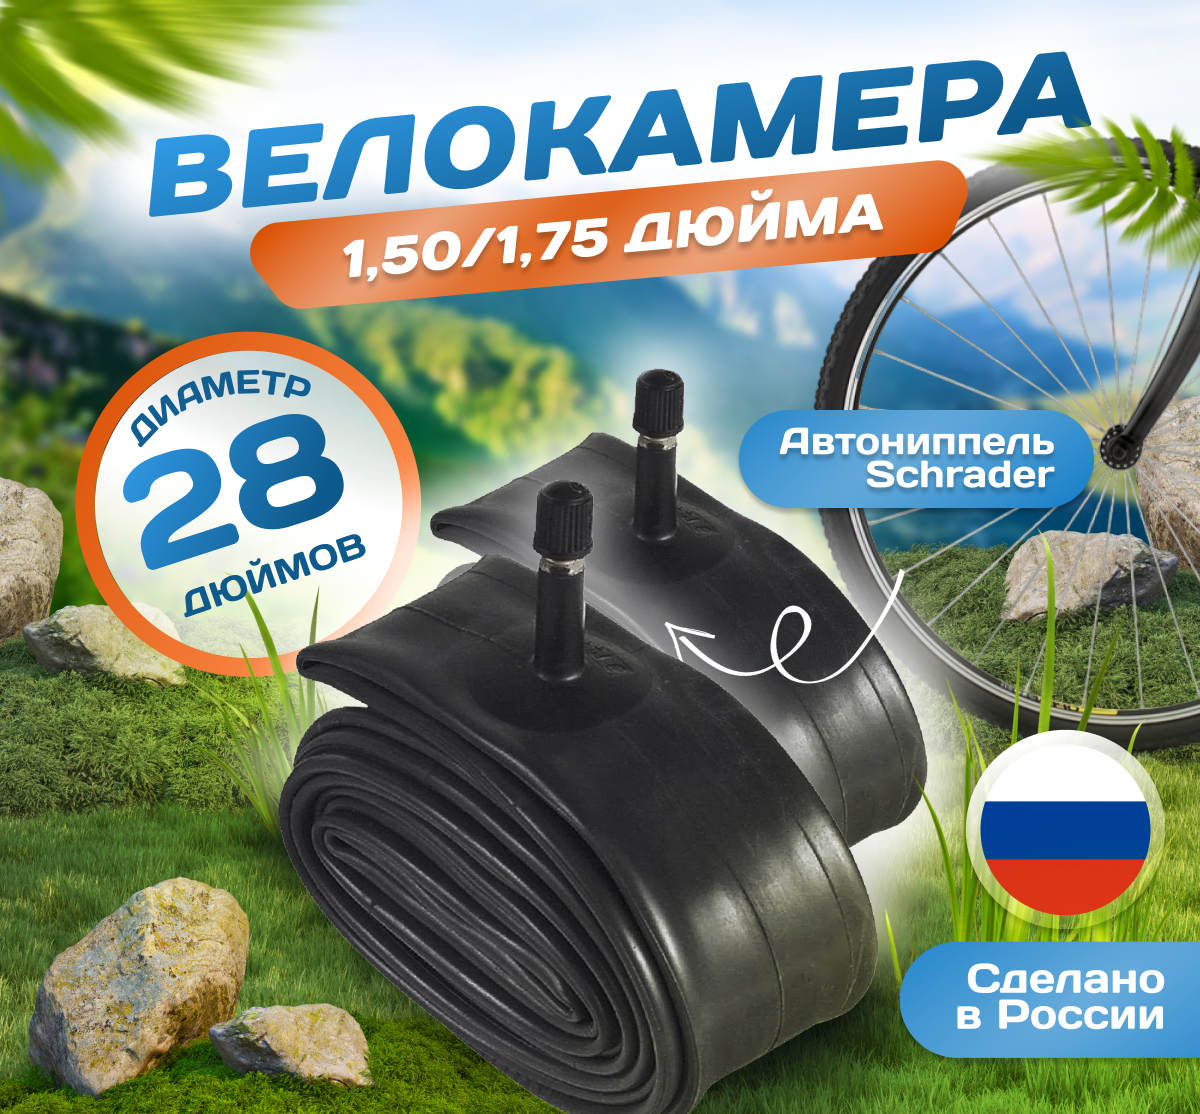 Камера для велосипеда 28х1,50/1,75 (Комплект 2 шт) (37/47-622), Российского производства. Автониппель Schrader 37mm